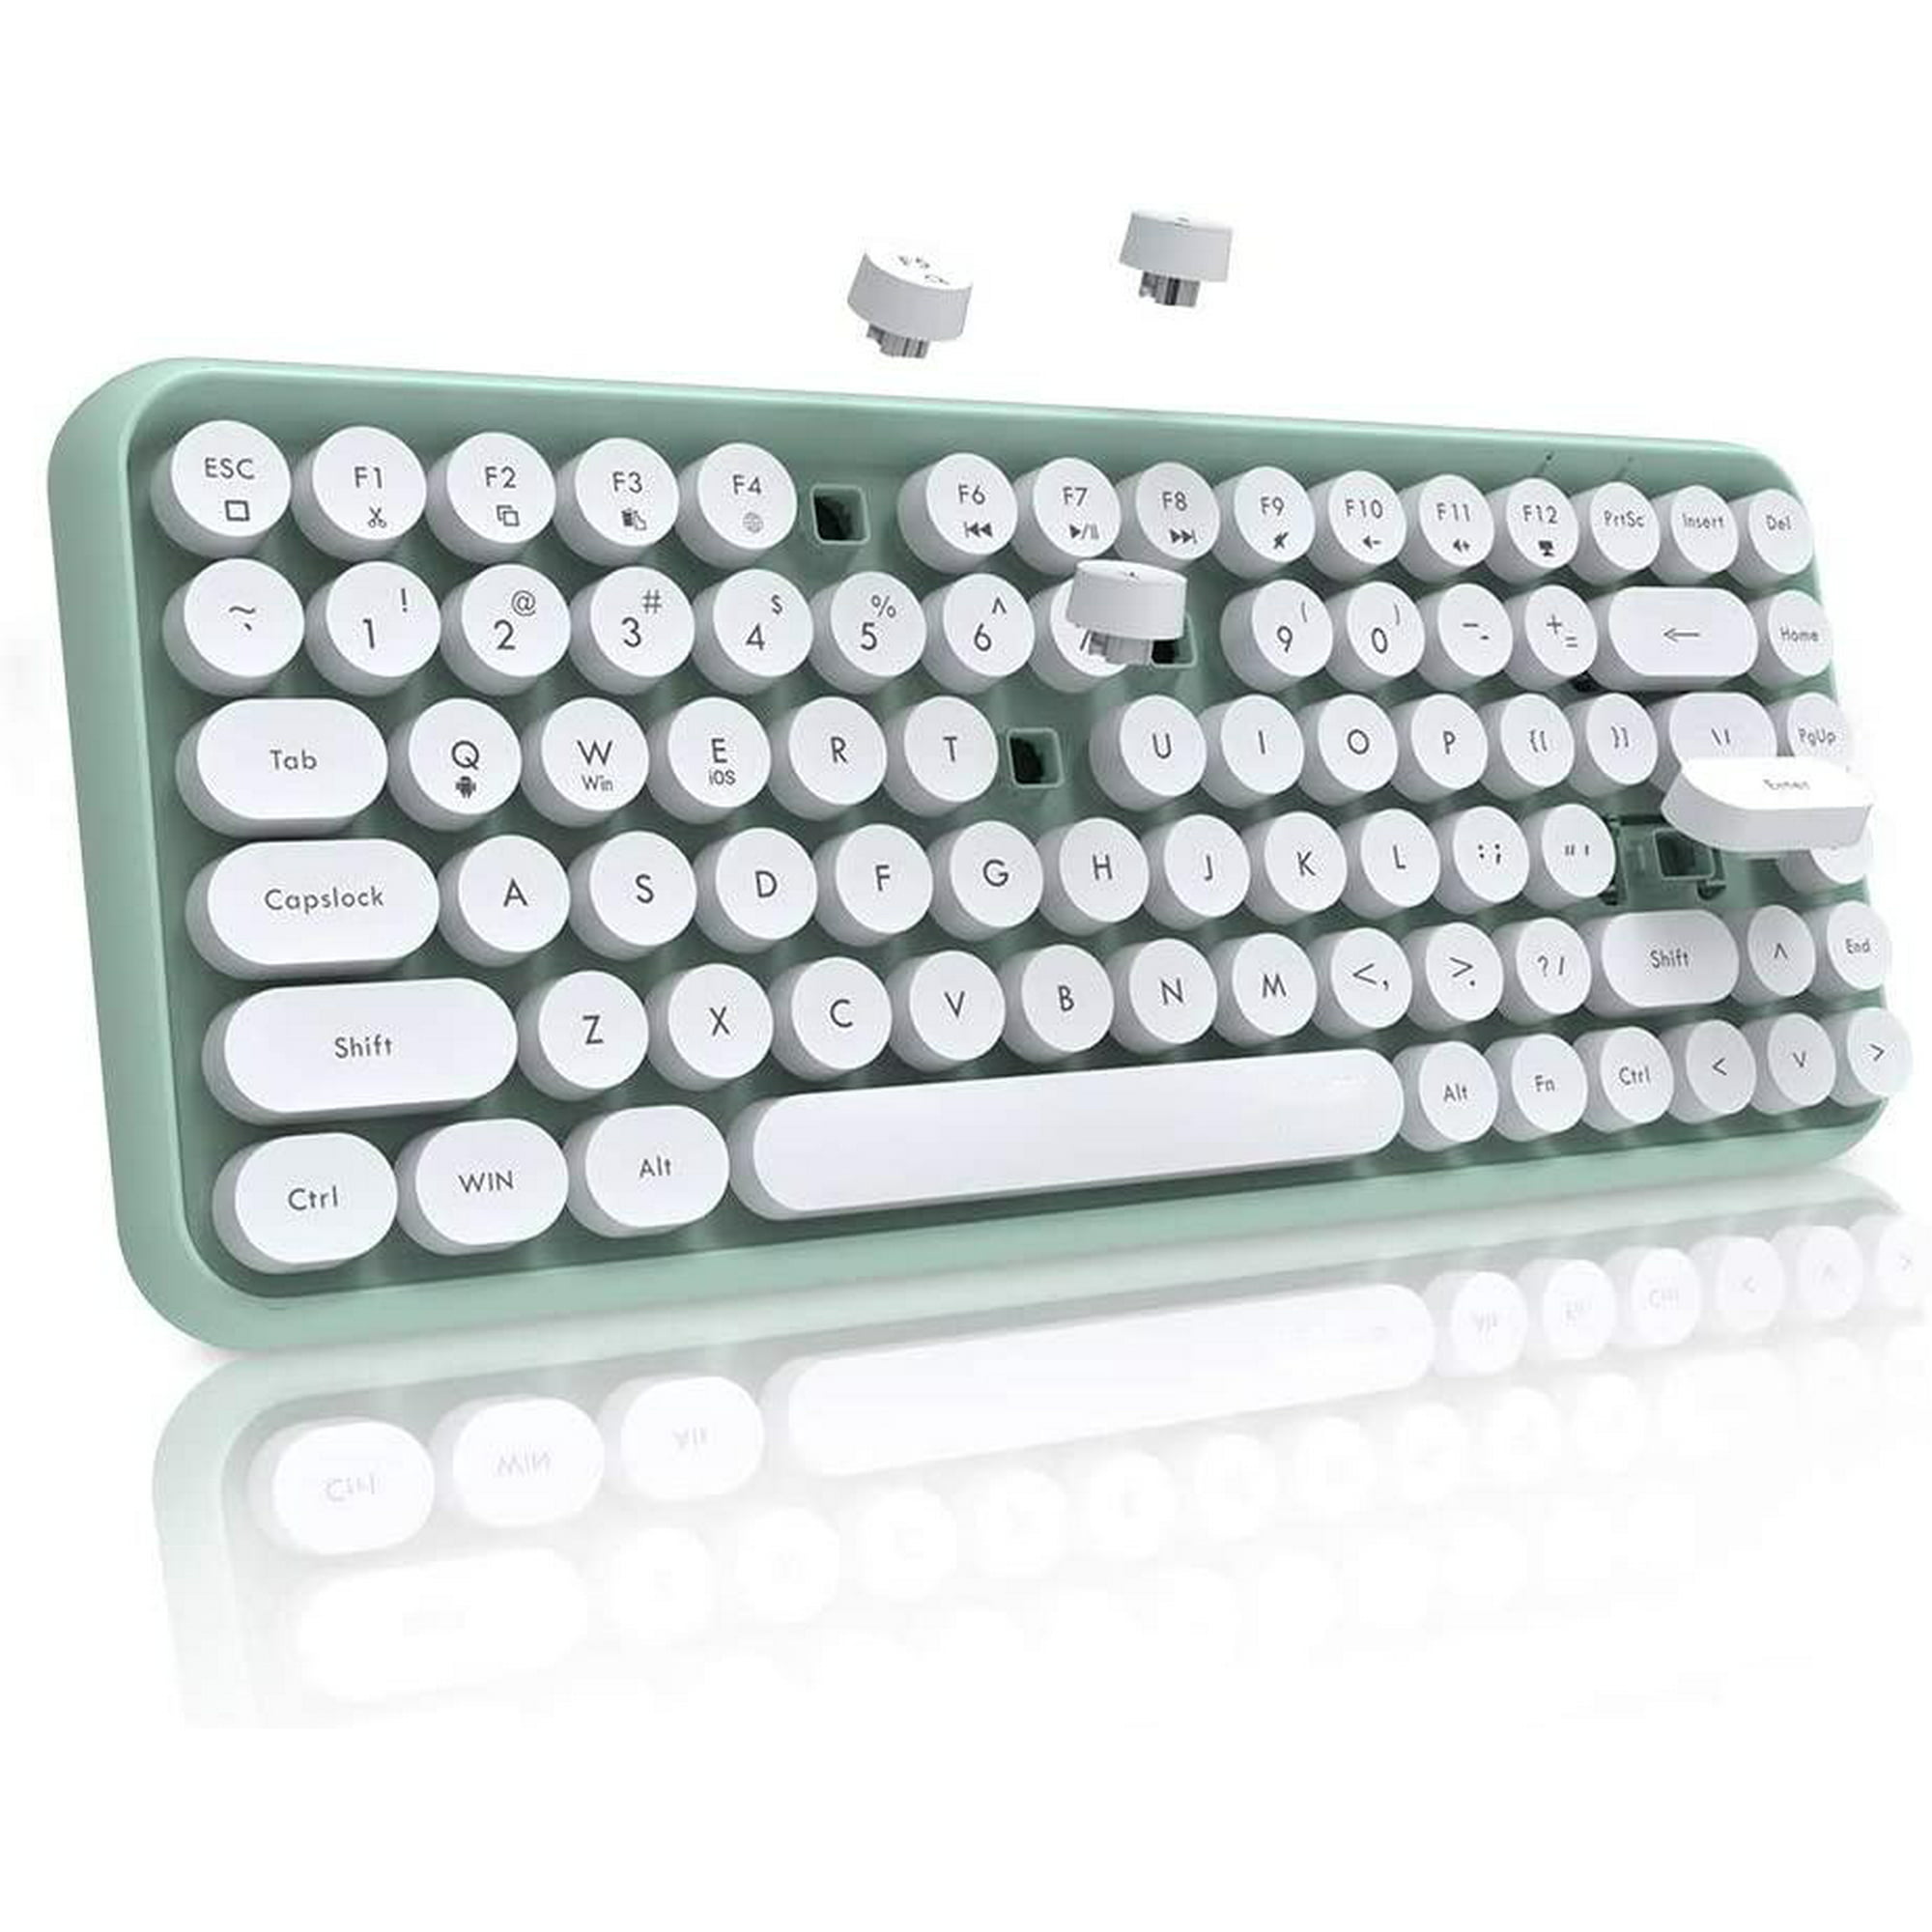  Zopsc Teclado de máquina de escribir retro, teclado inalámbrico  Bluetooth lindo con soporte para teléfono y tableta, teclado mecánico de  104 teclas redondas para Windows, Android, iOS (verde menta) : Electrónica